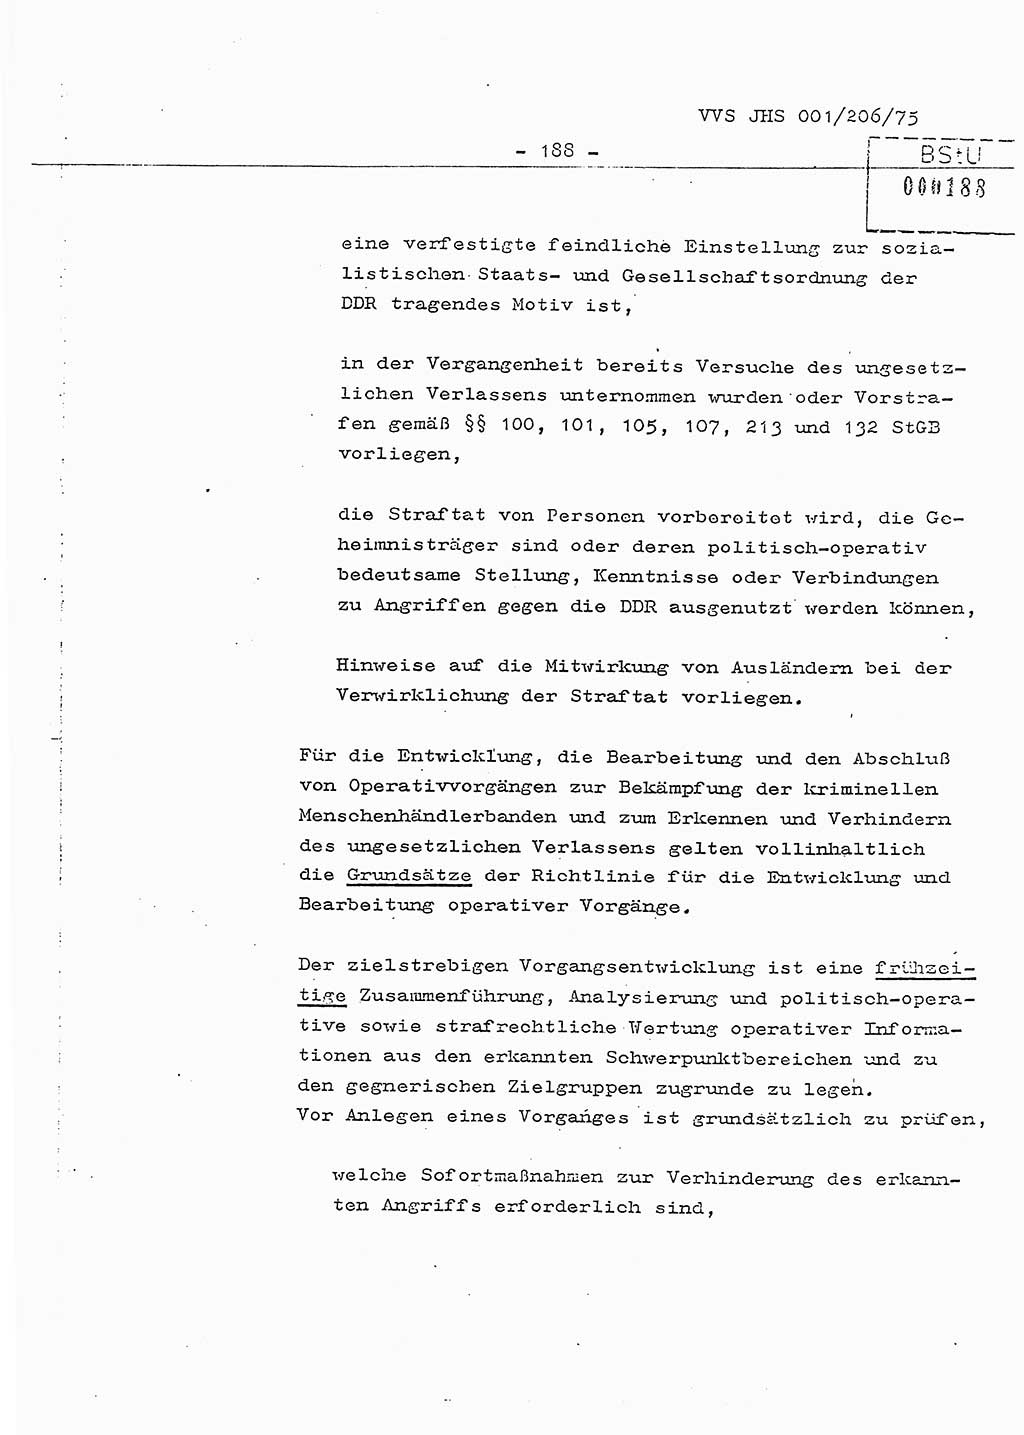 Dissertation Generalmajor Manfred Hummitzsch (Leiter der BV Leipzig), Generalmajor Heinz Fiedler (HA Ⅵ), Oberst Rolf Fister (HA Ⅸ), Ministerium für Staatssicherheit (MfS) [Deutsche Demokratische Republik (DDR)], Juristische Hochschule (JHS), Vertrauliche Verschlußsache (VVS) 001-206/75, Potsdam 1975, Seite 188 (Diss. MfS DDR JHS VVS 001-206/75 1975, S. 188)